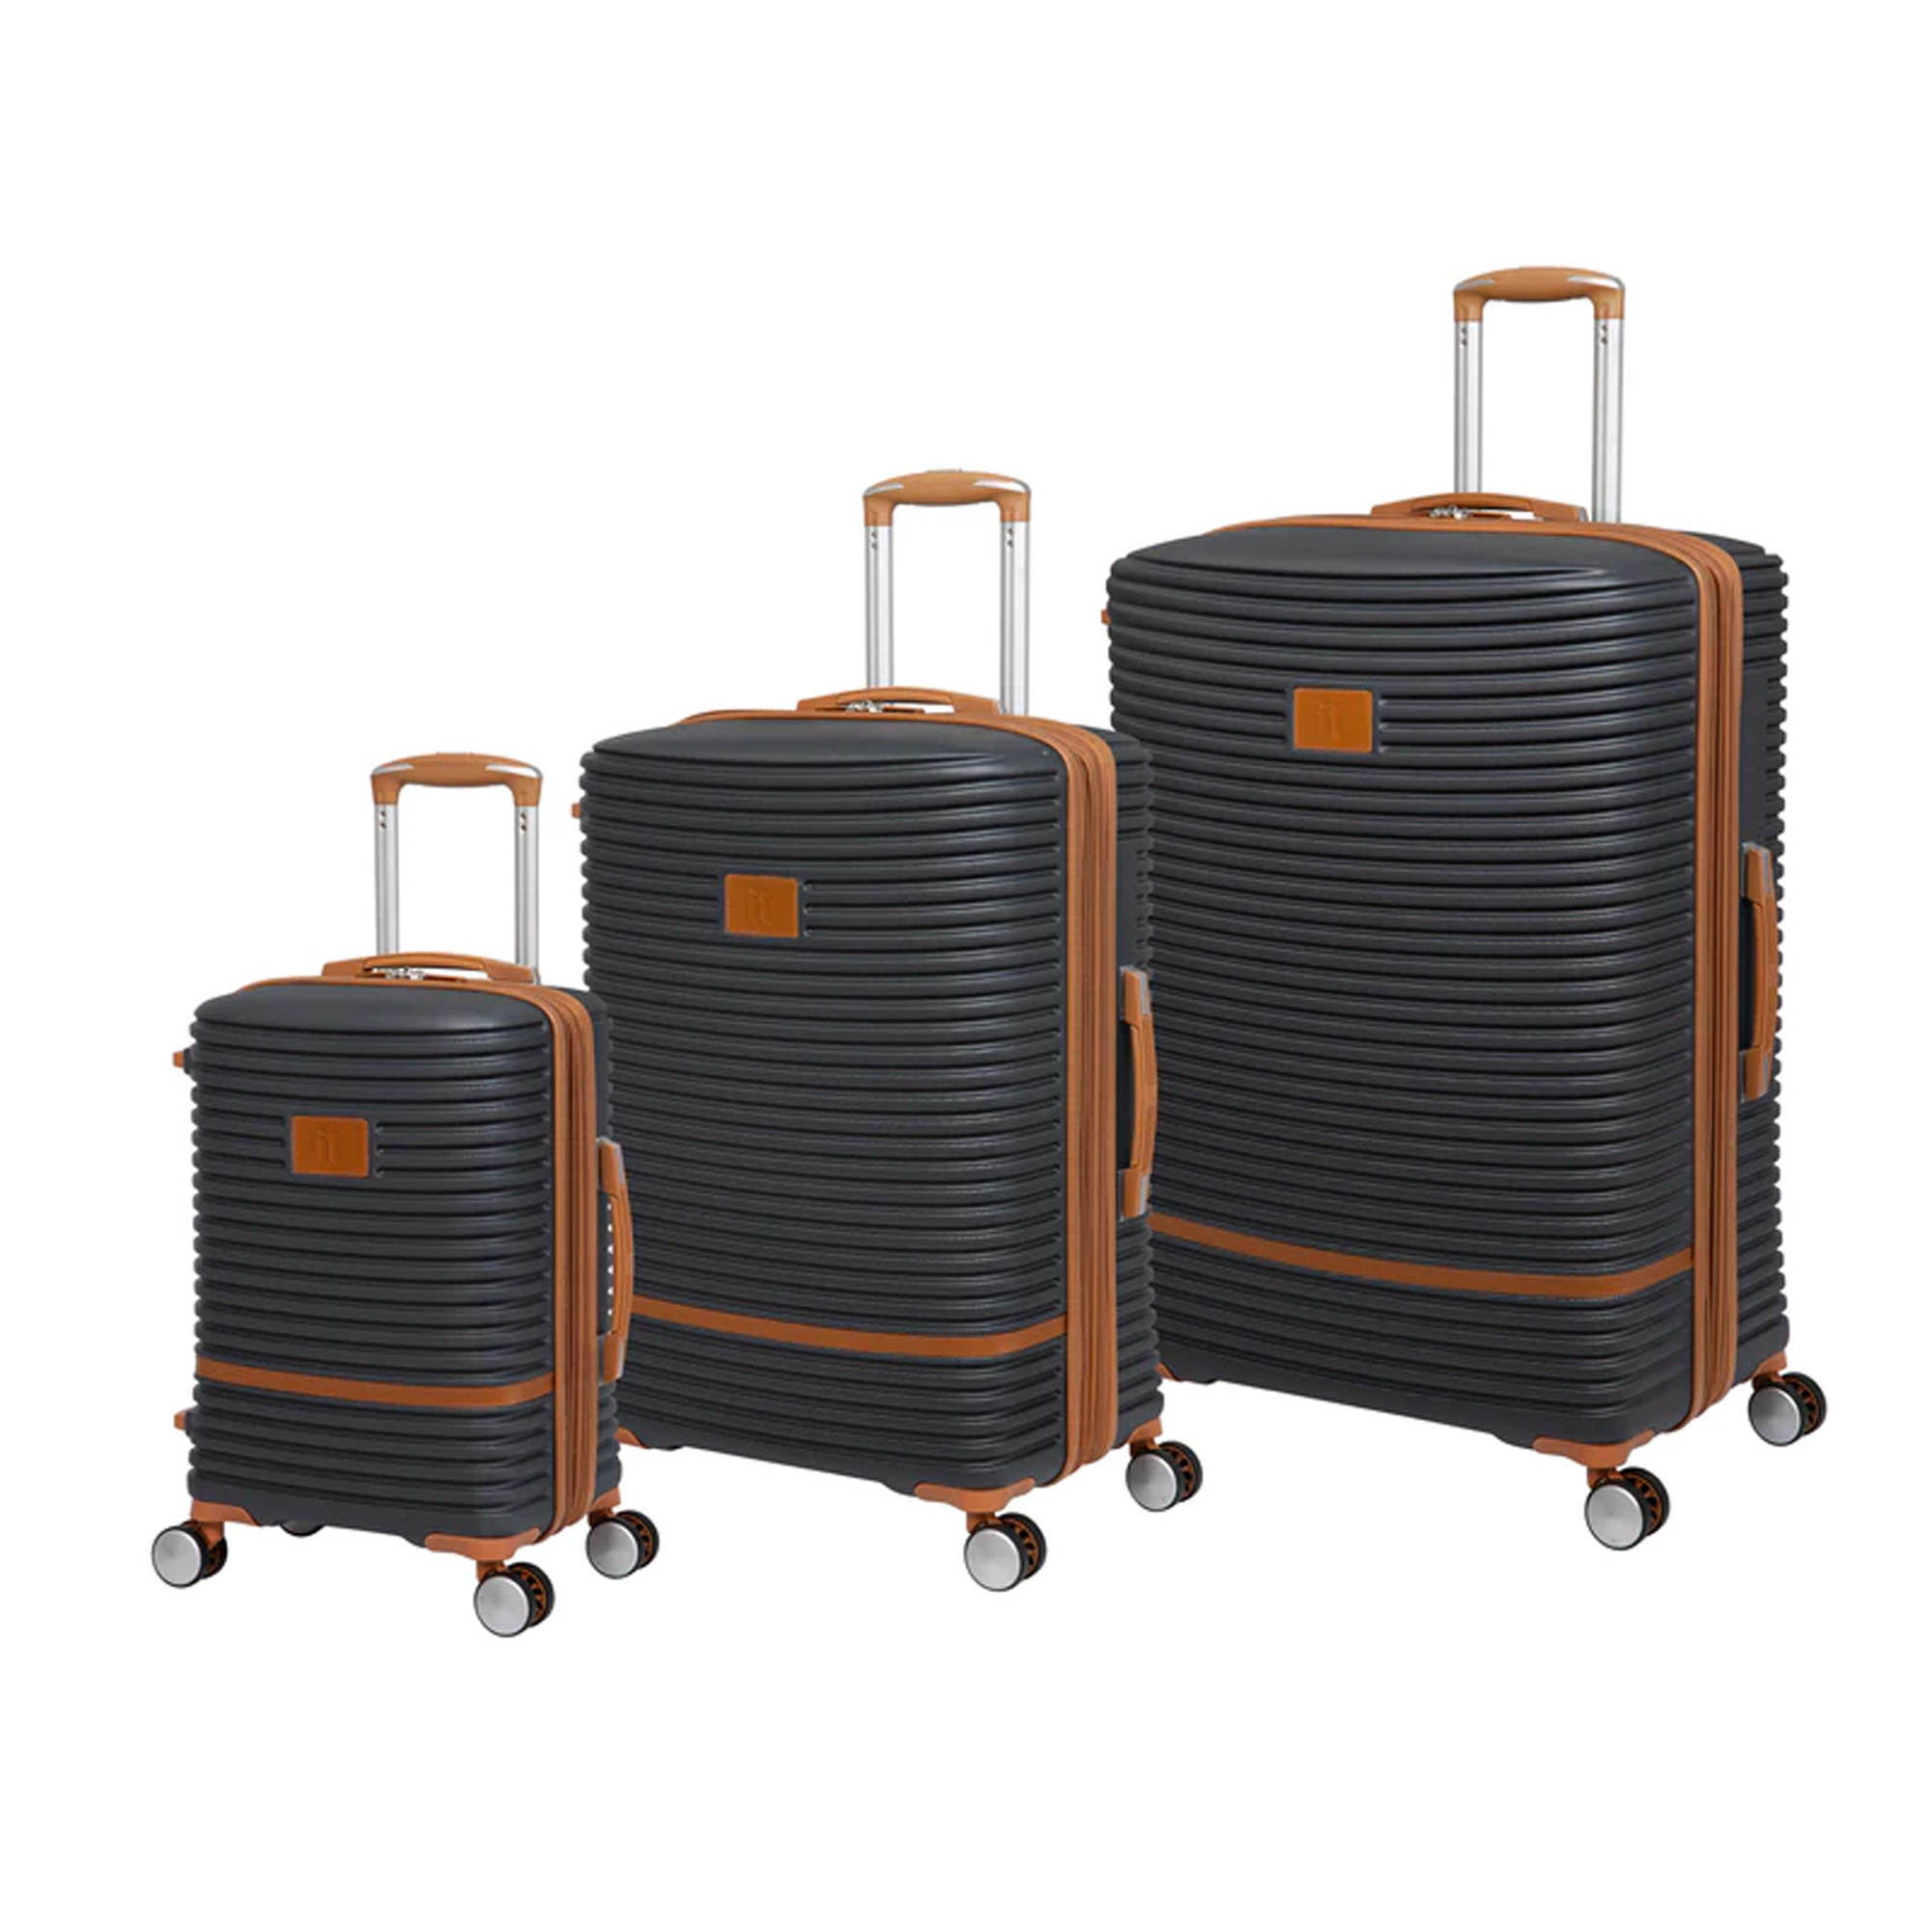 مجموعه سه عددی چمدان ای تی مدل ریپلی کتینگ 4338694